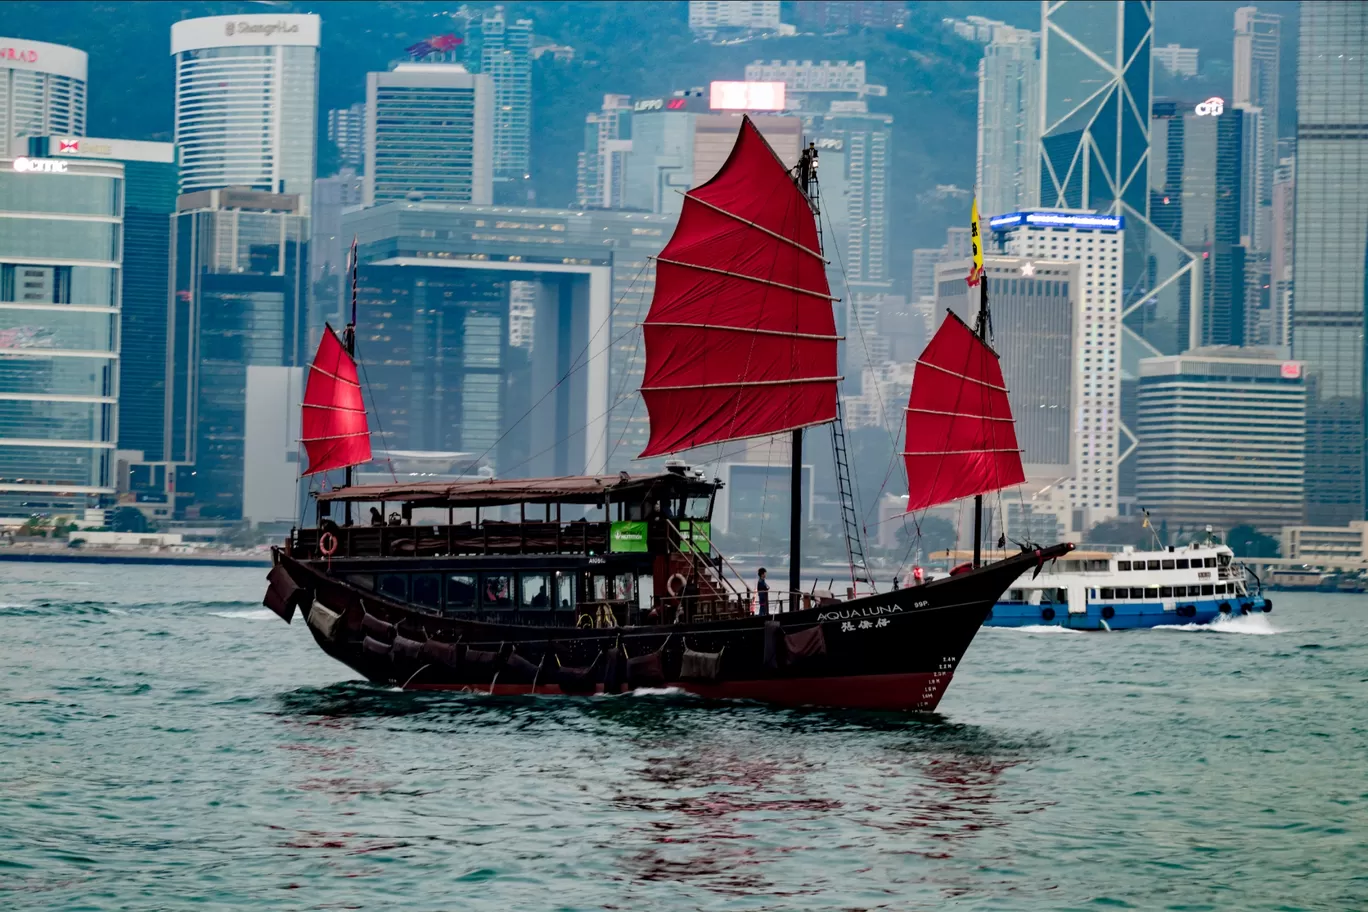 Photo of Hong Kong By shaily gupta